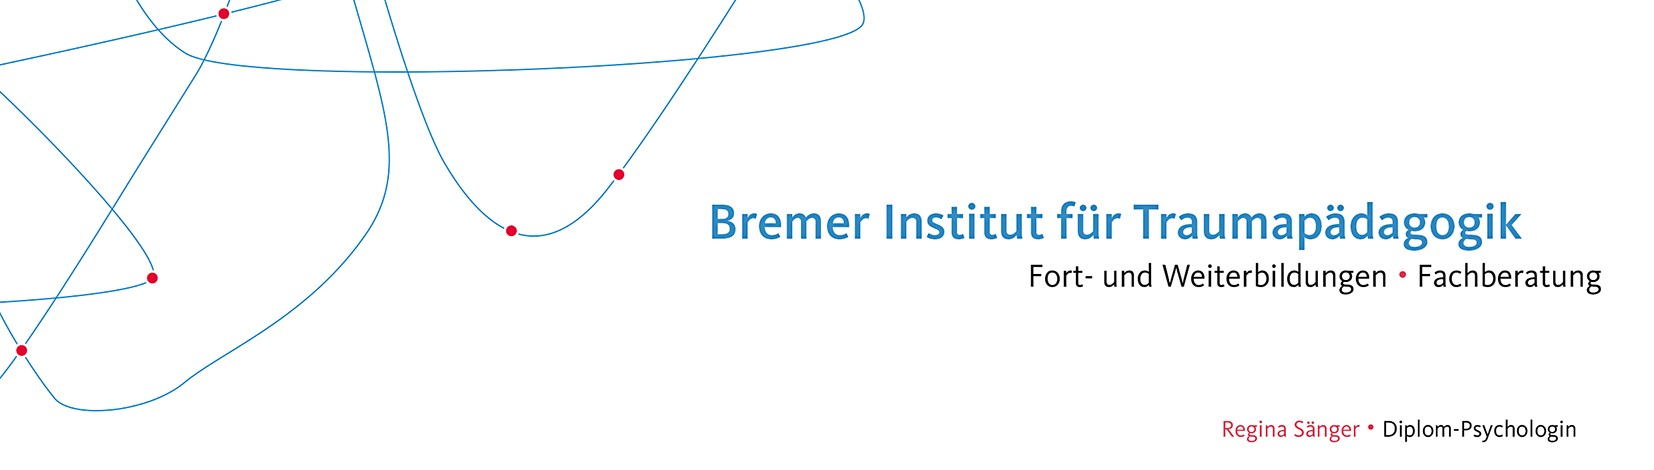 Logo von Bremer Institut für Traumapädagogik